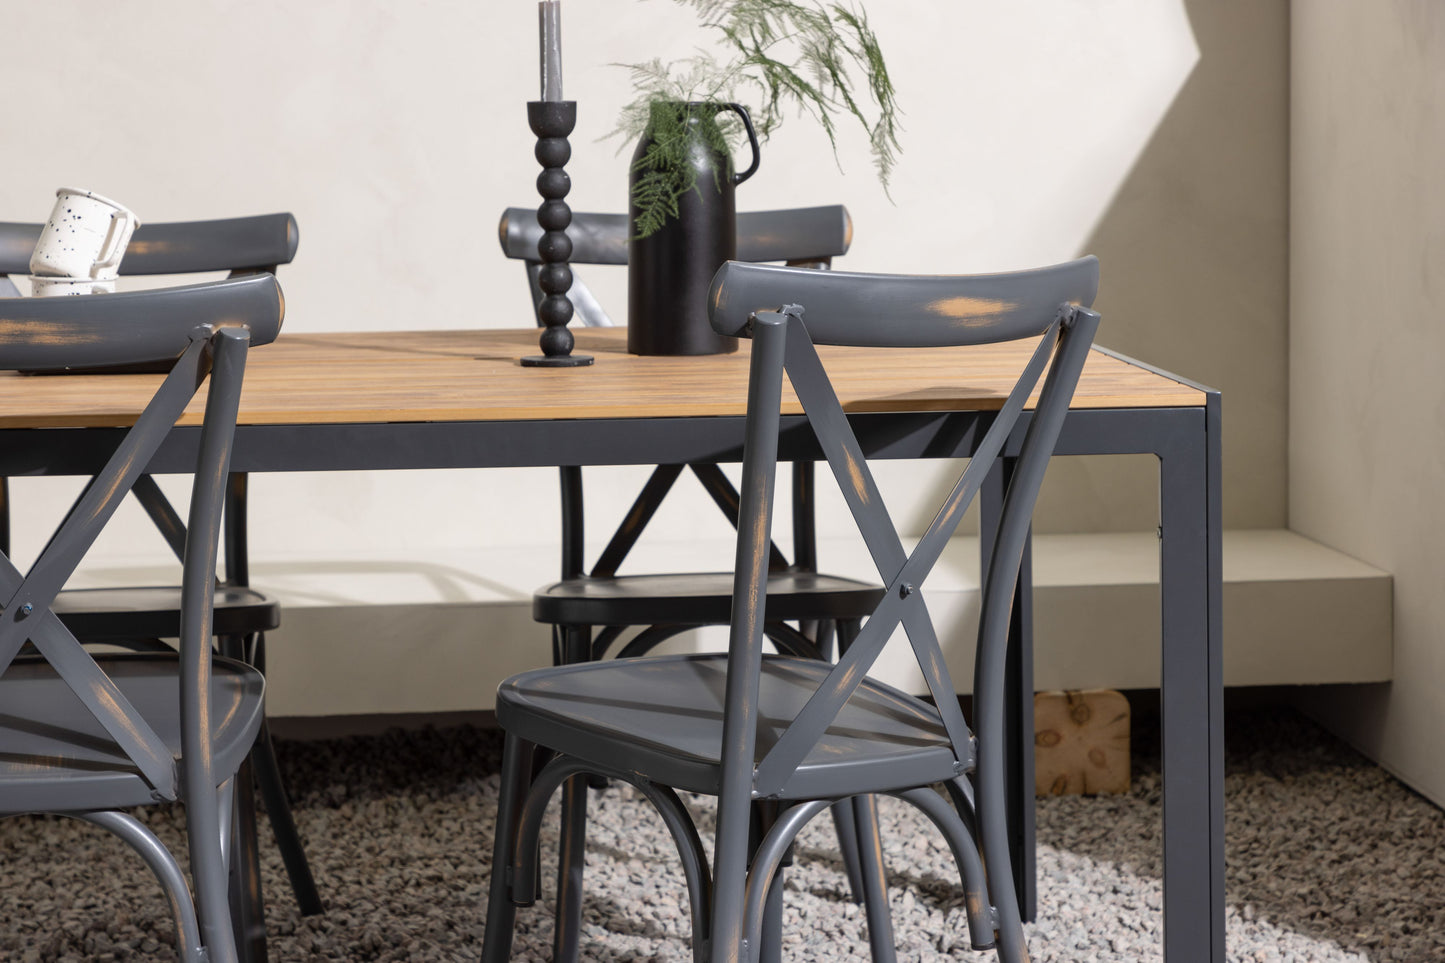 Break - Spisebord, Aluminium - Sort / Natur Rektangulær 90*150* + Tablas stol Aluminium - Sort